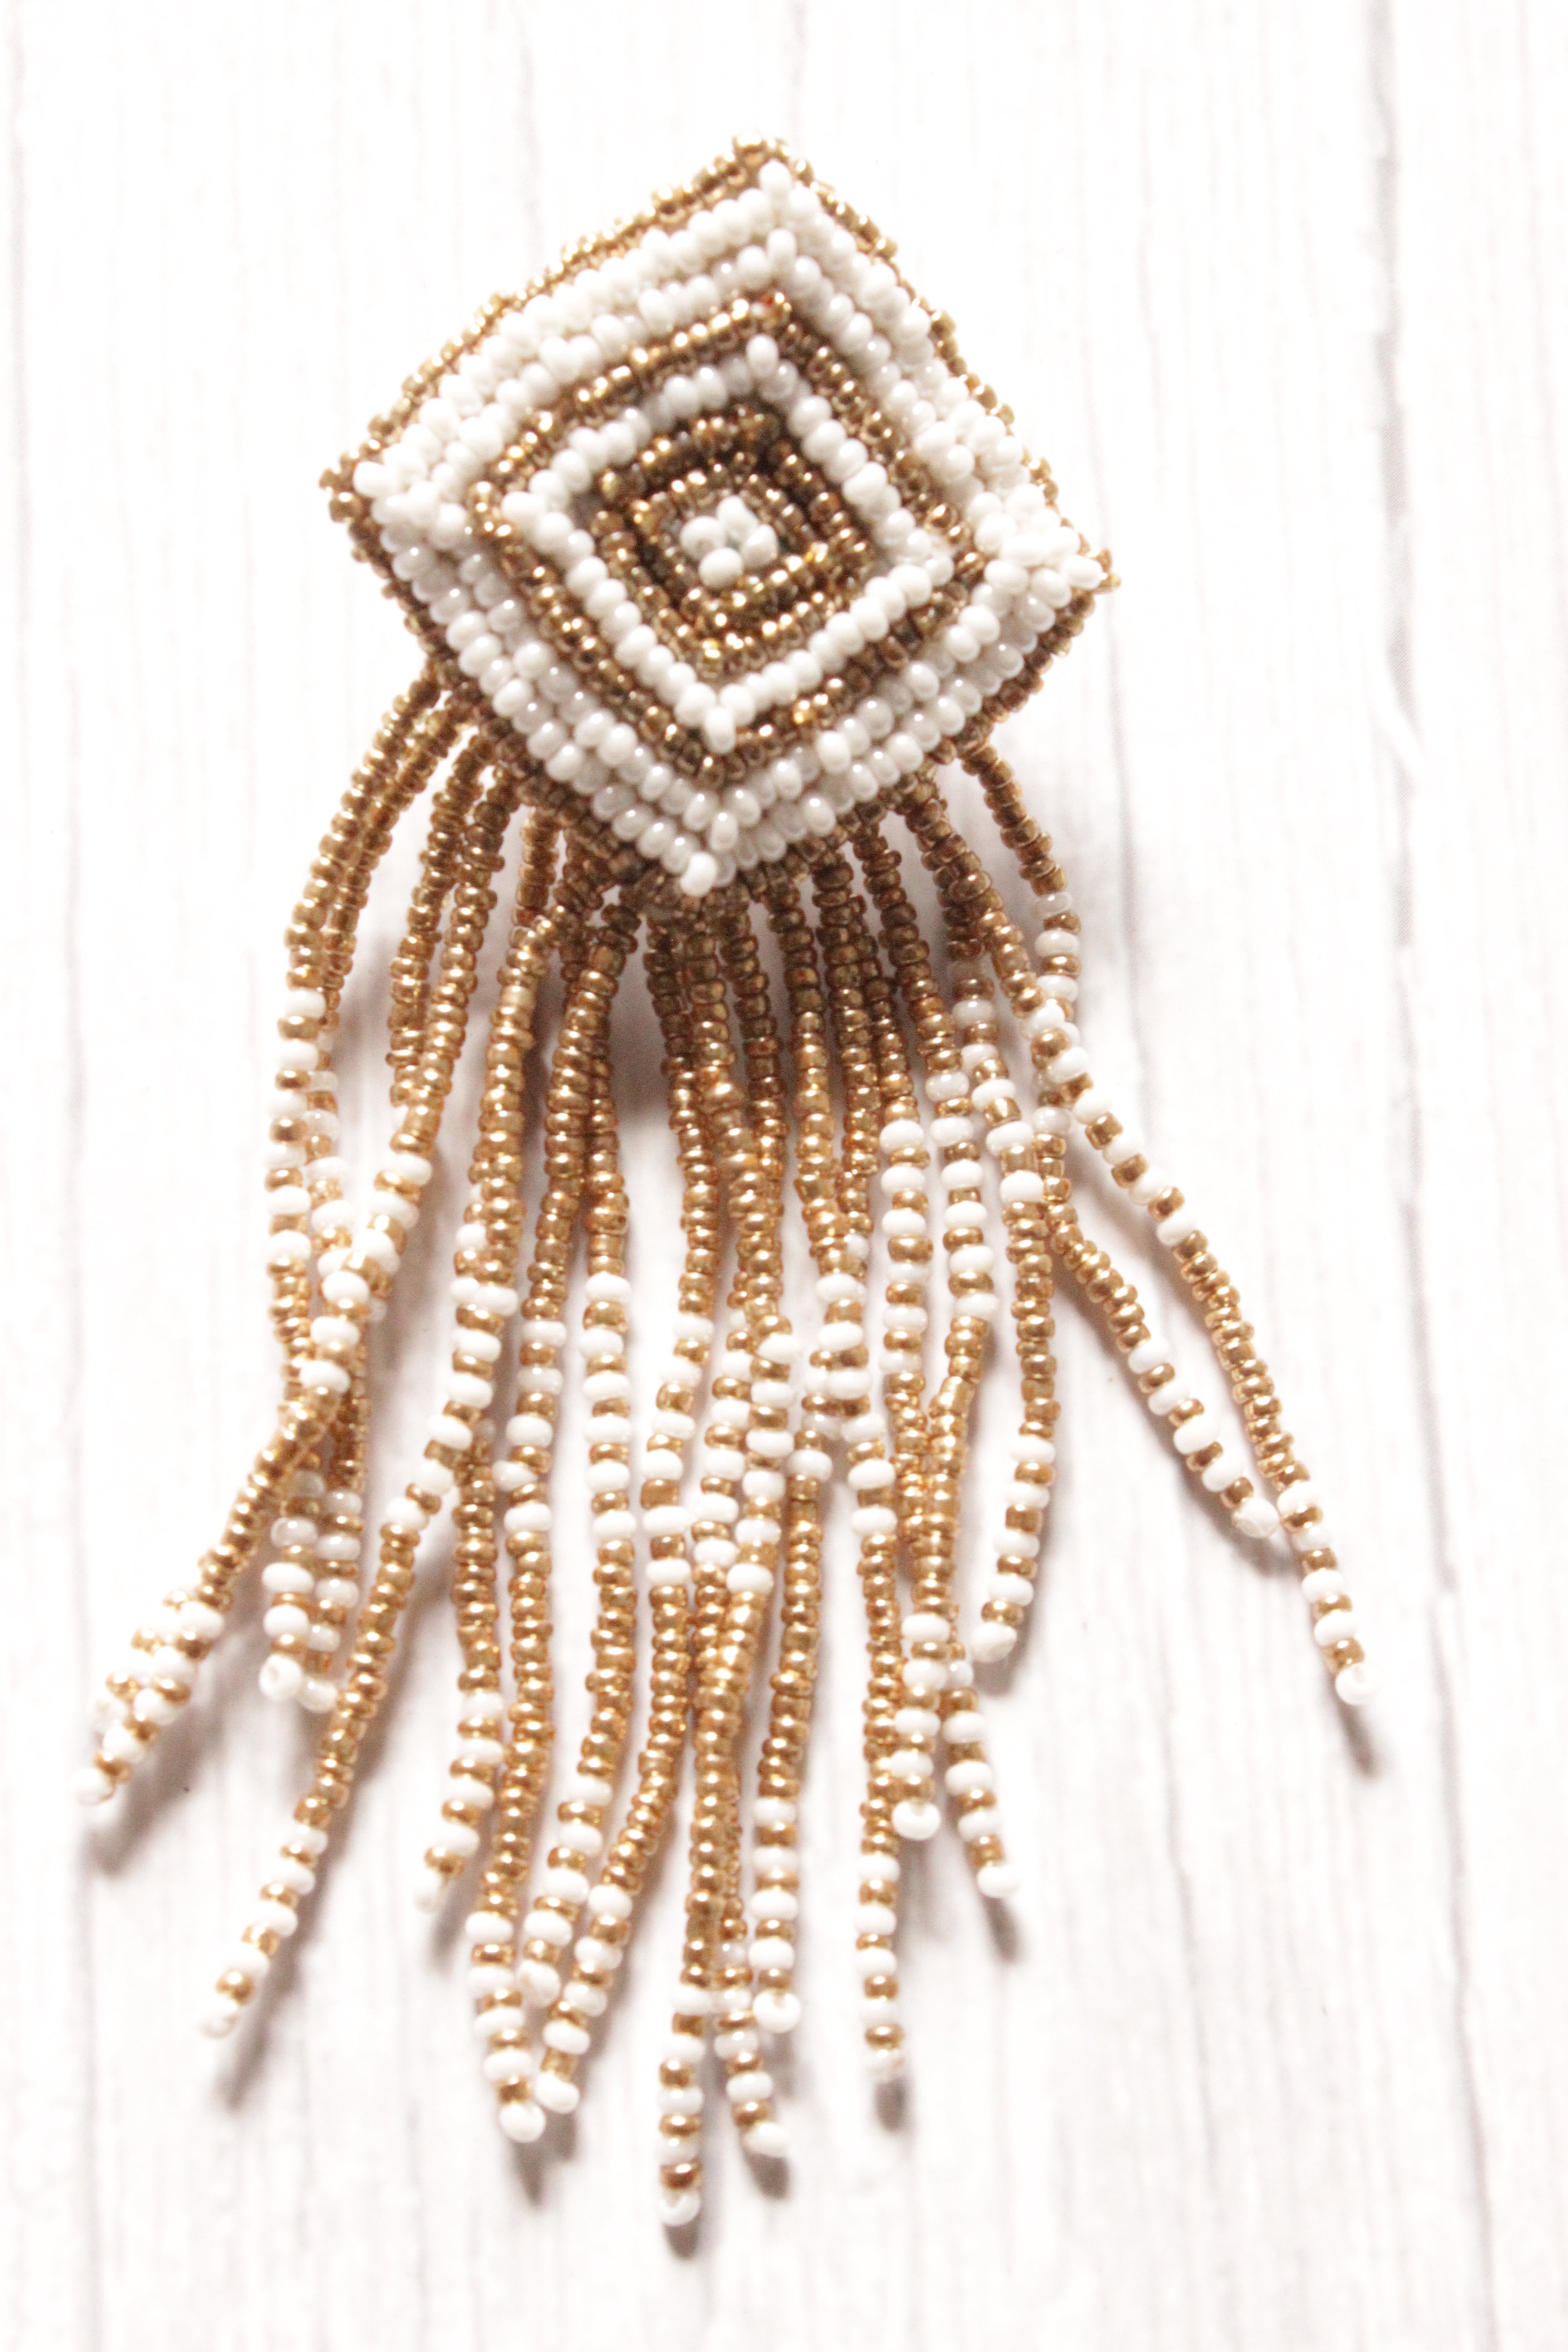 White and Golden Hand Braided Beads Boho Dangler Earrings